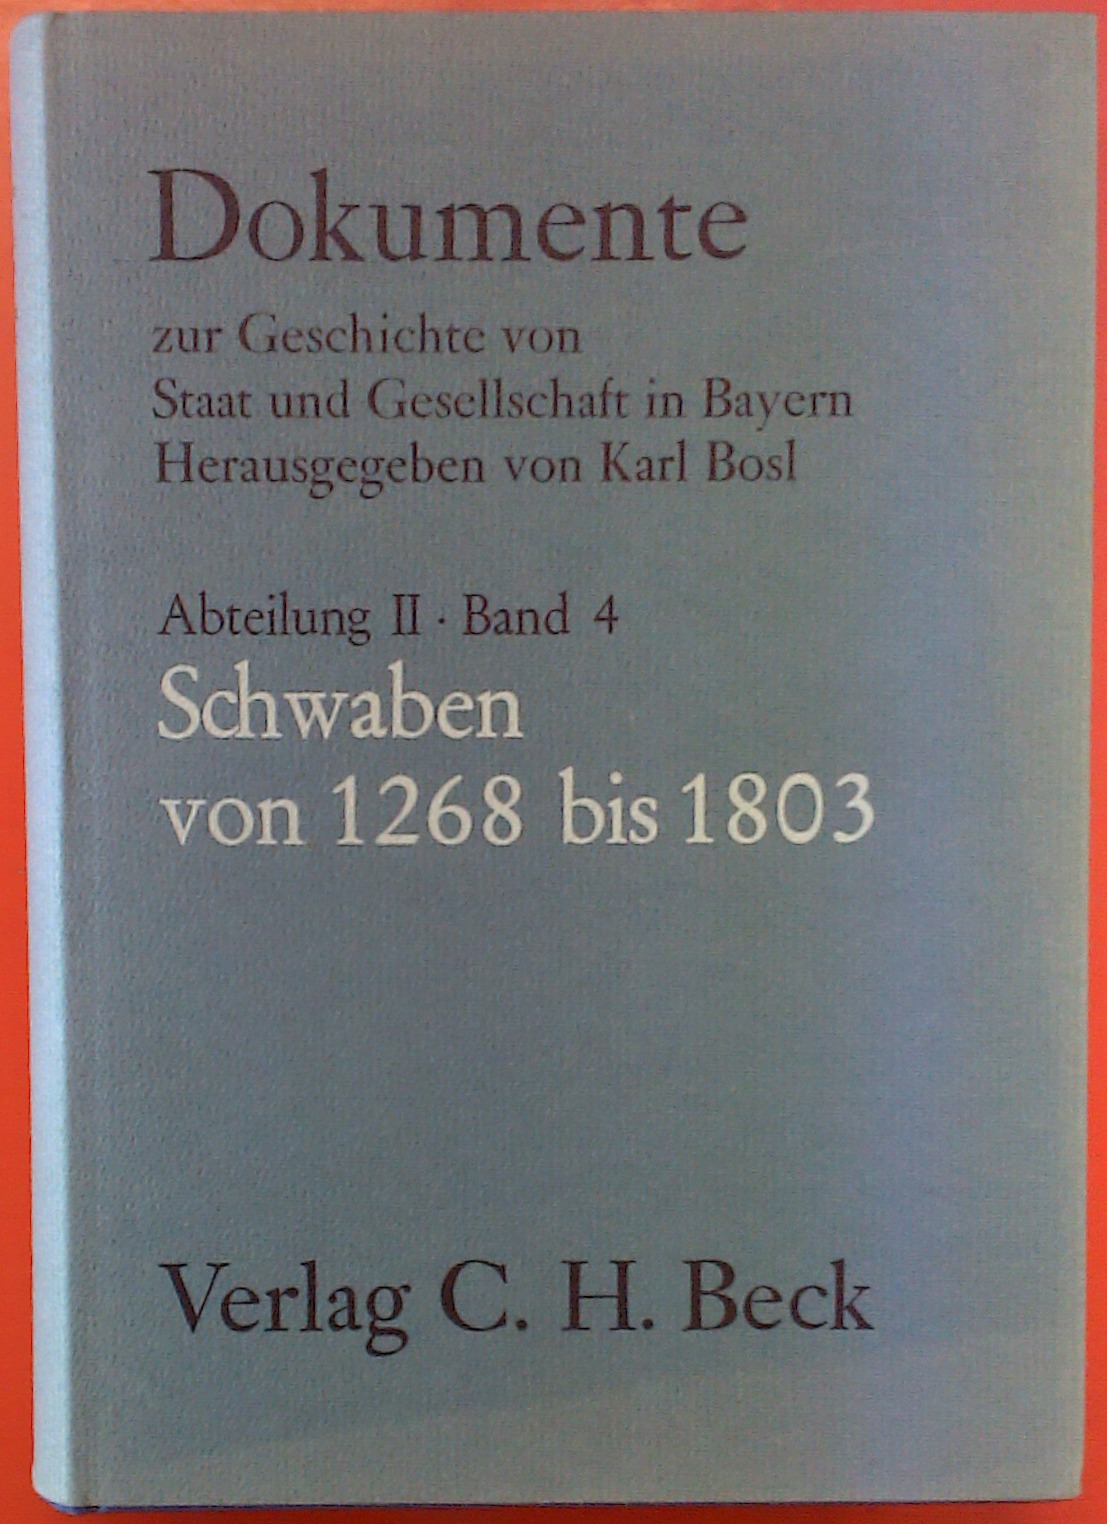 Dokumente zur Geschichte von Staat und Gesellschaft in Bayern, ABteilung II Band 4 Schwaben von 1268 bis 1803 - Karl Bosl